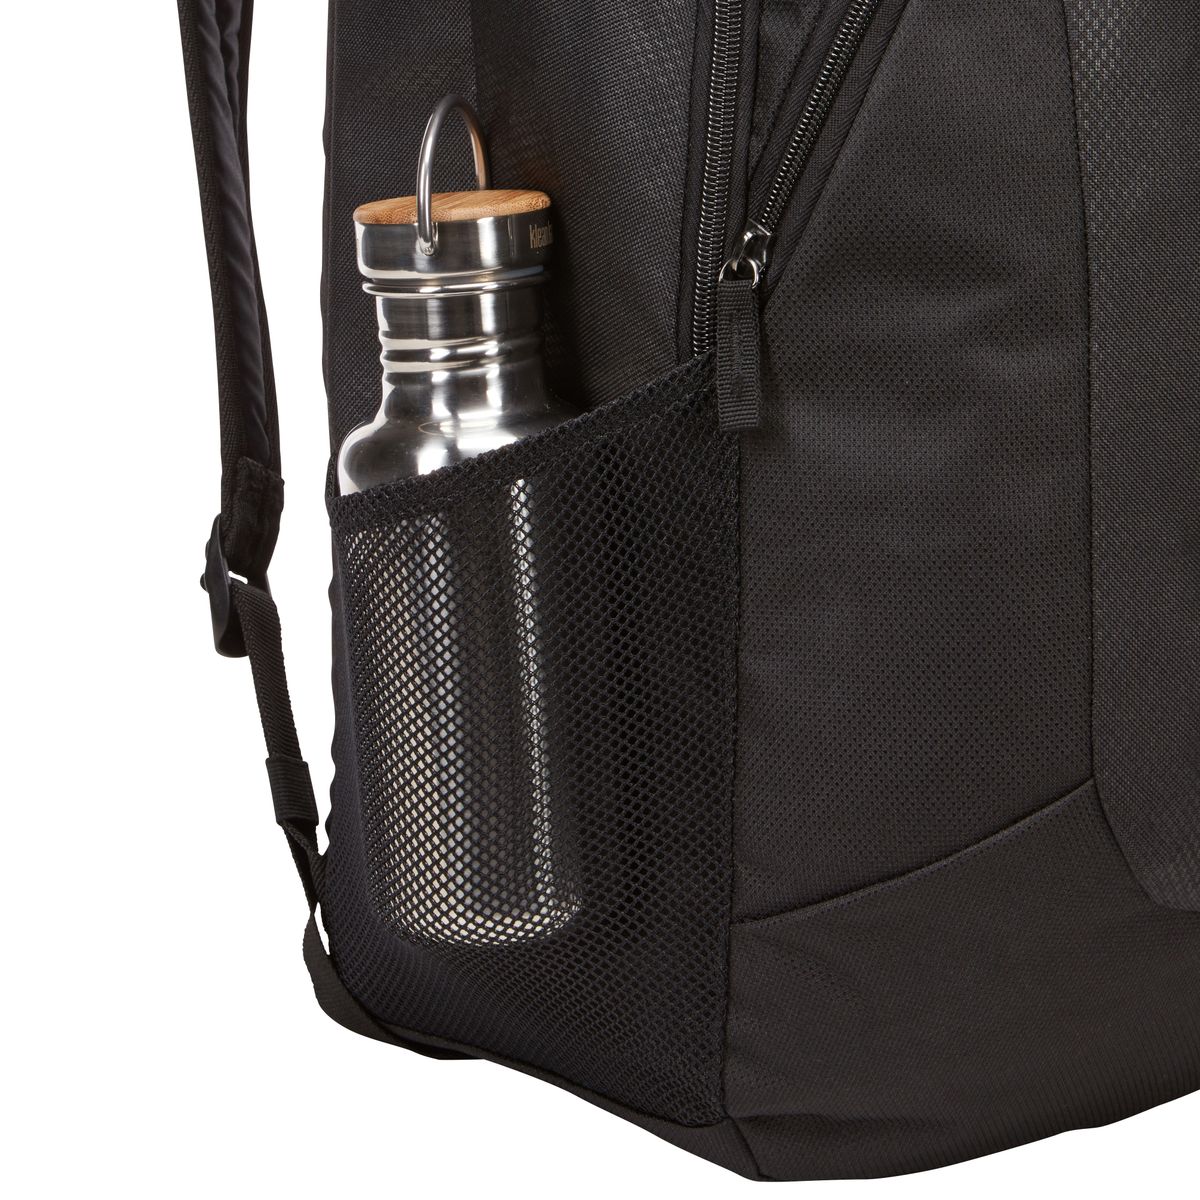 Case Logic Prevailer Backpack laptop backpack